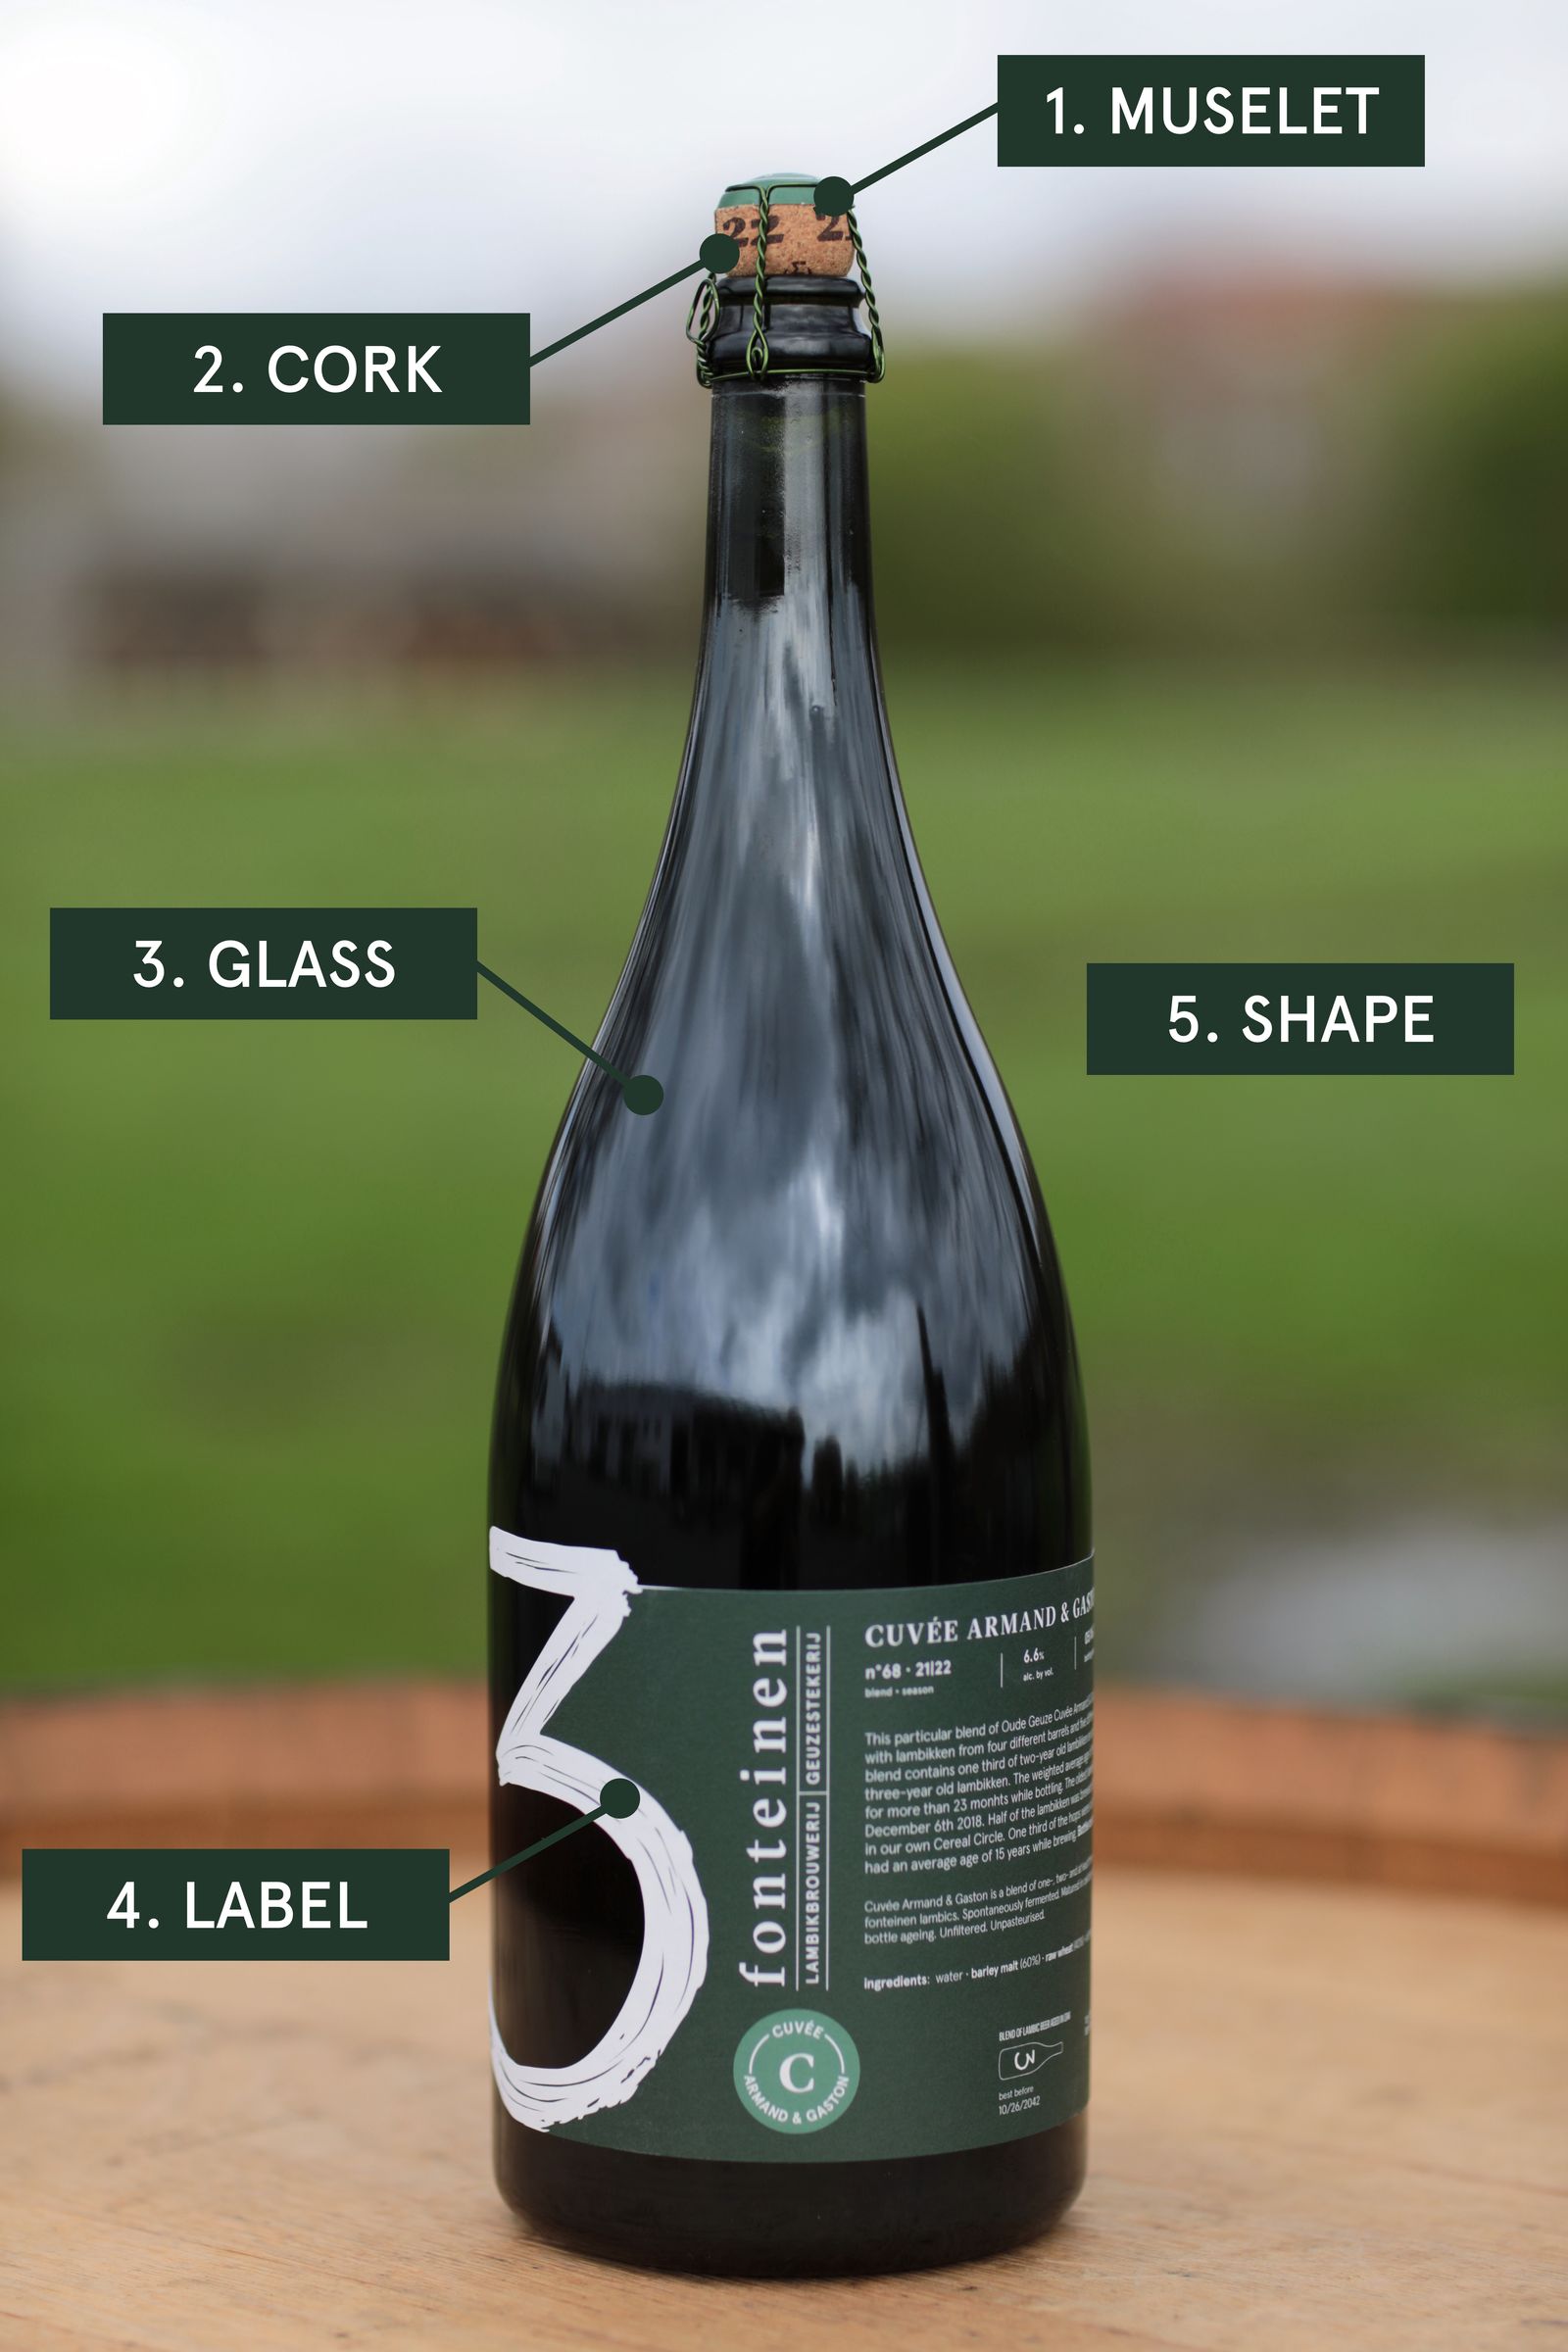 The characteristics of a 3 Fonteinen bottle.